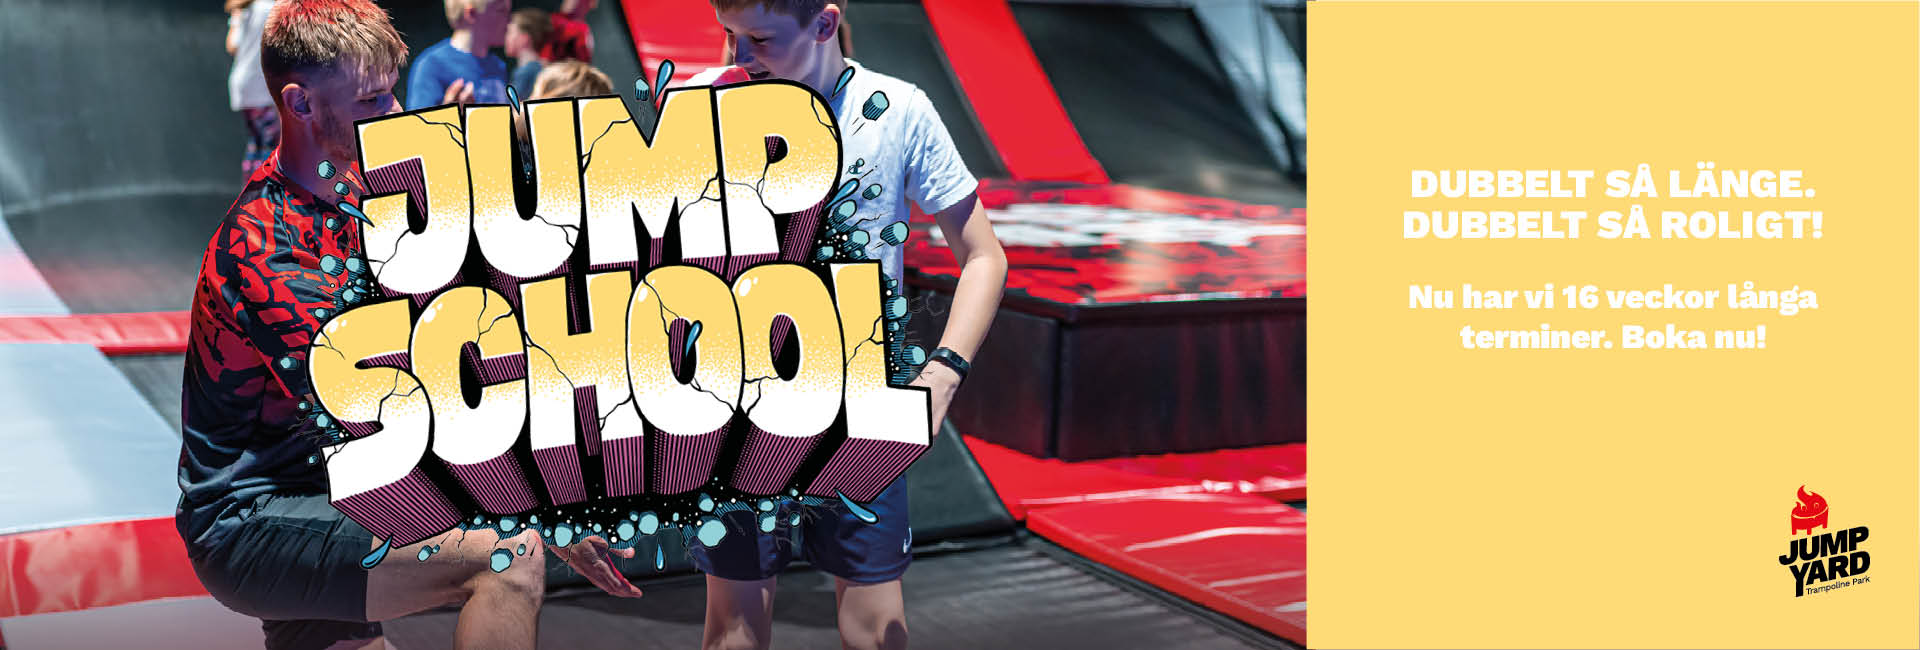 16 veckors JumpSchool termin - trampolinkurser barkarby